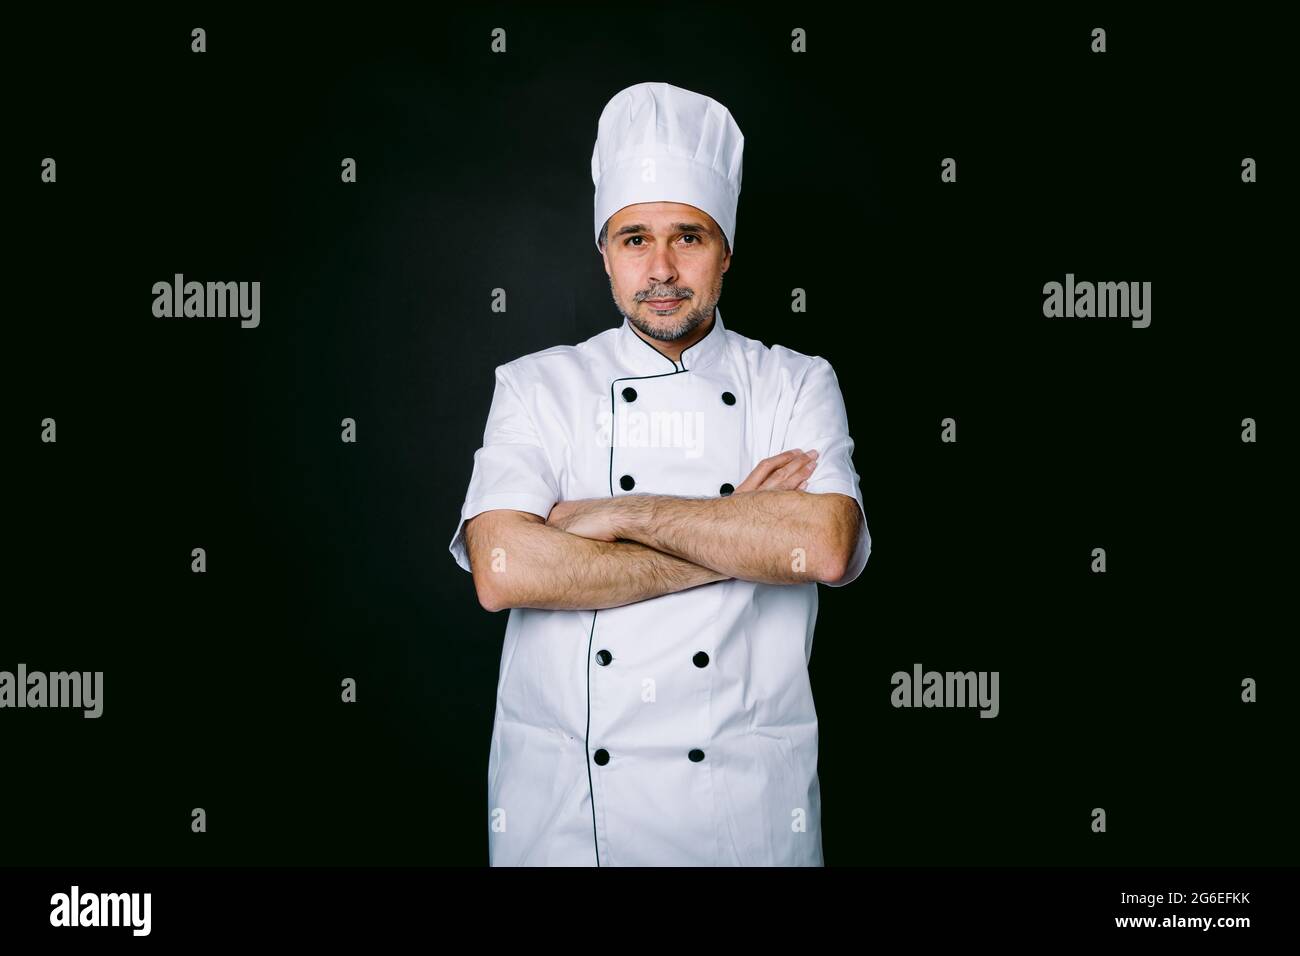 Chef cuisinier portant une veste et un chapeau de cuisine, bras croisés,  sur fond noir Photo Stock - Alamy